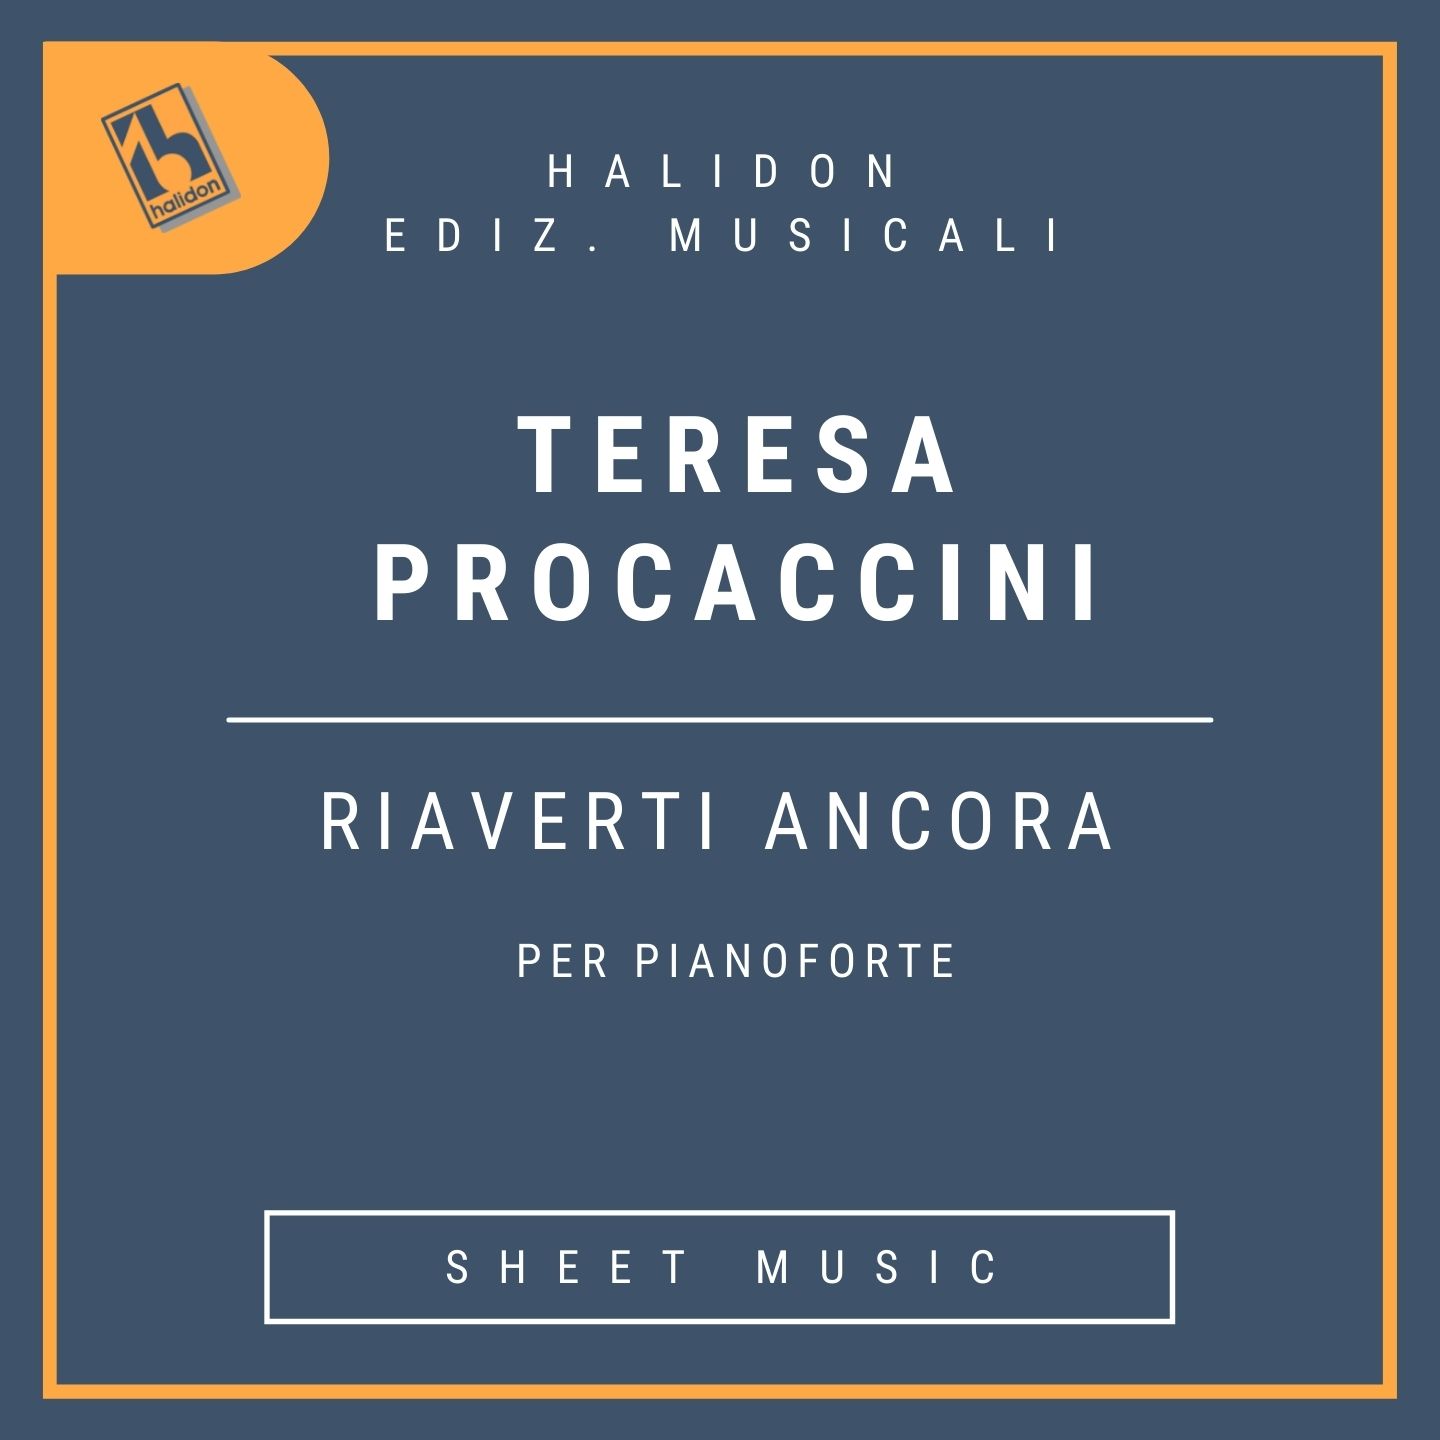 Teresa Procaccini - Riaverti ancora